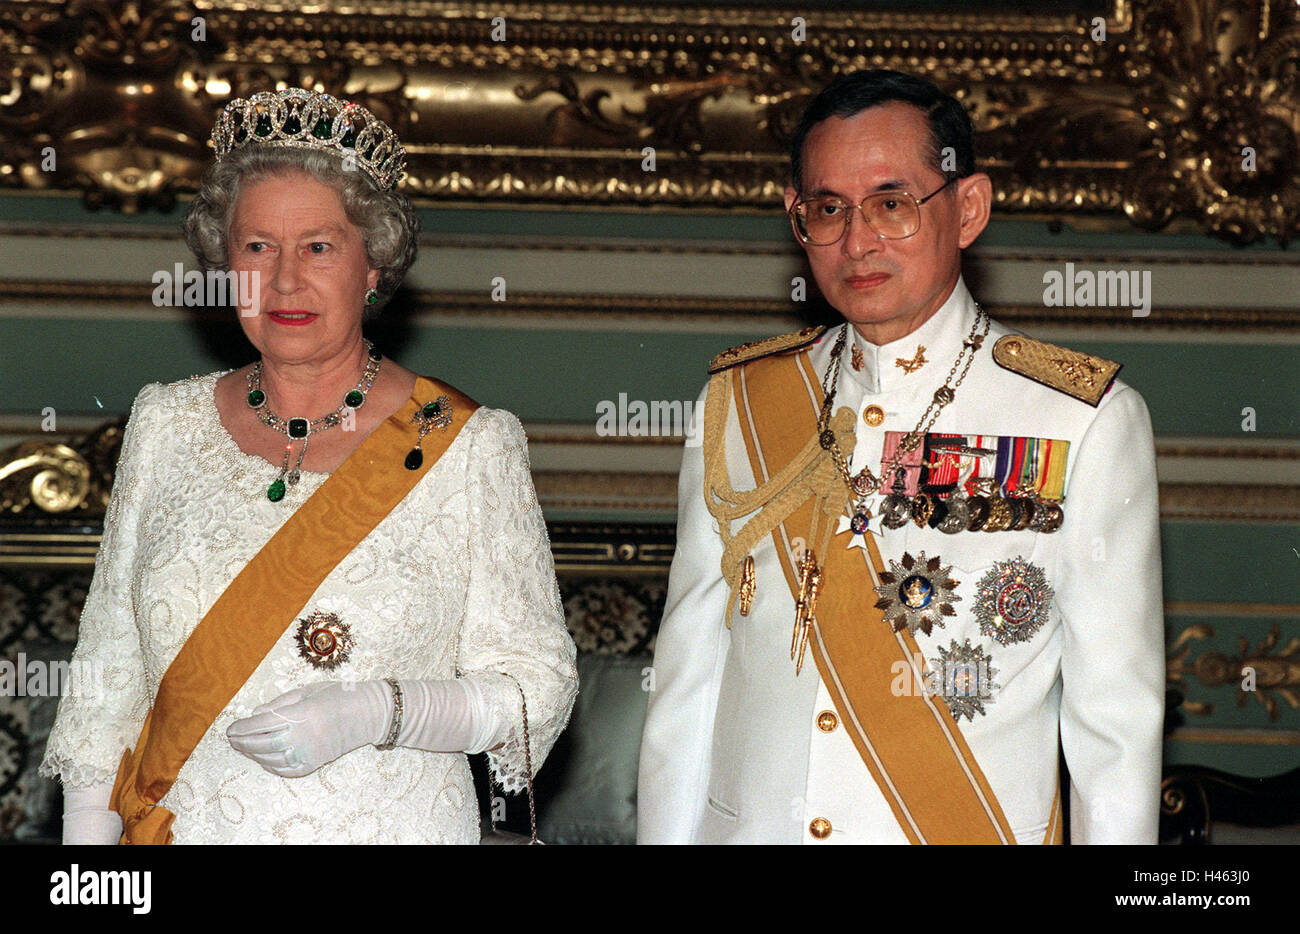 Photo de fichier en date du 28/10/96 de la reine Elizabeth II et le Roi Bhumibol Adulyadej de Thaïlande à un banquet d'État au Palais Chakri de Bangkok, comme la reine est devenu le plus long règne monarque vivant après sa mort. Banque D'Images